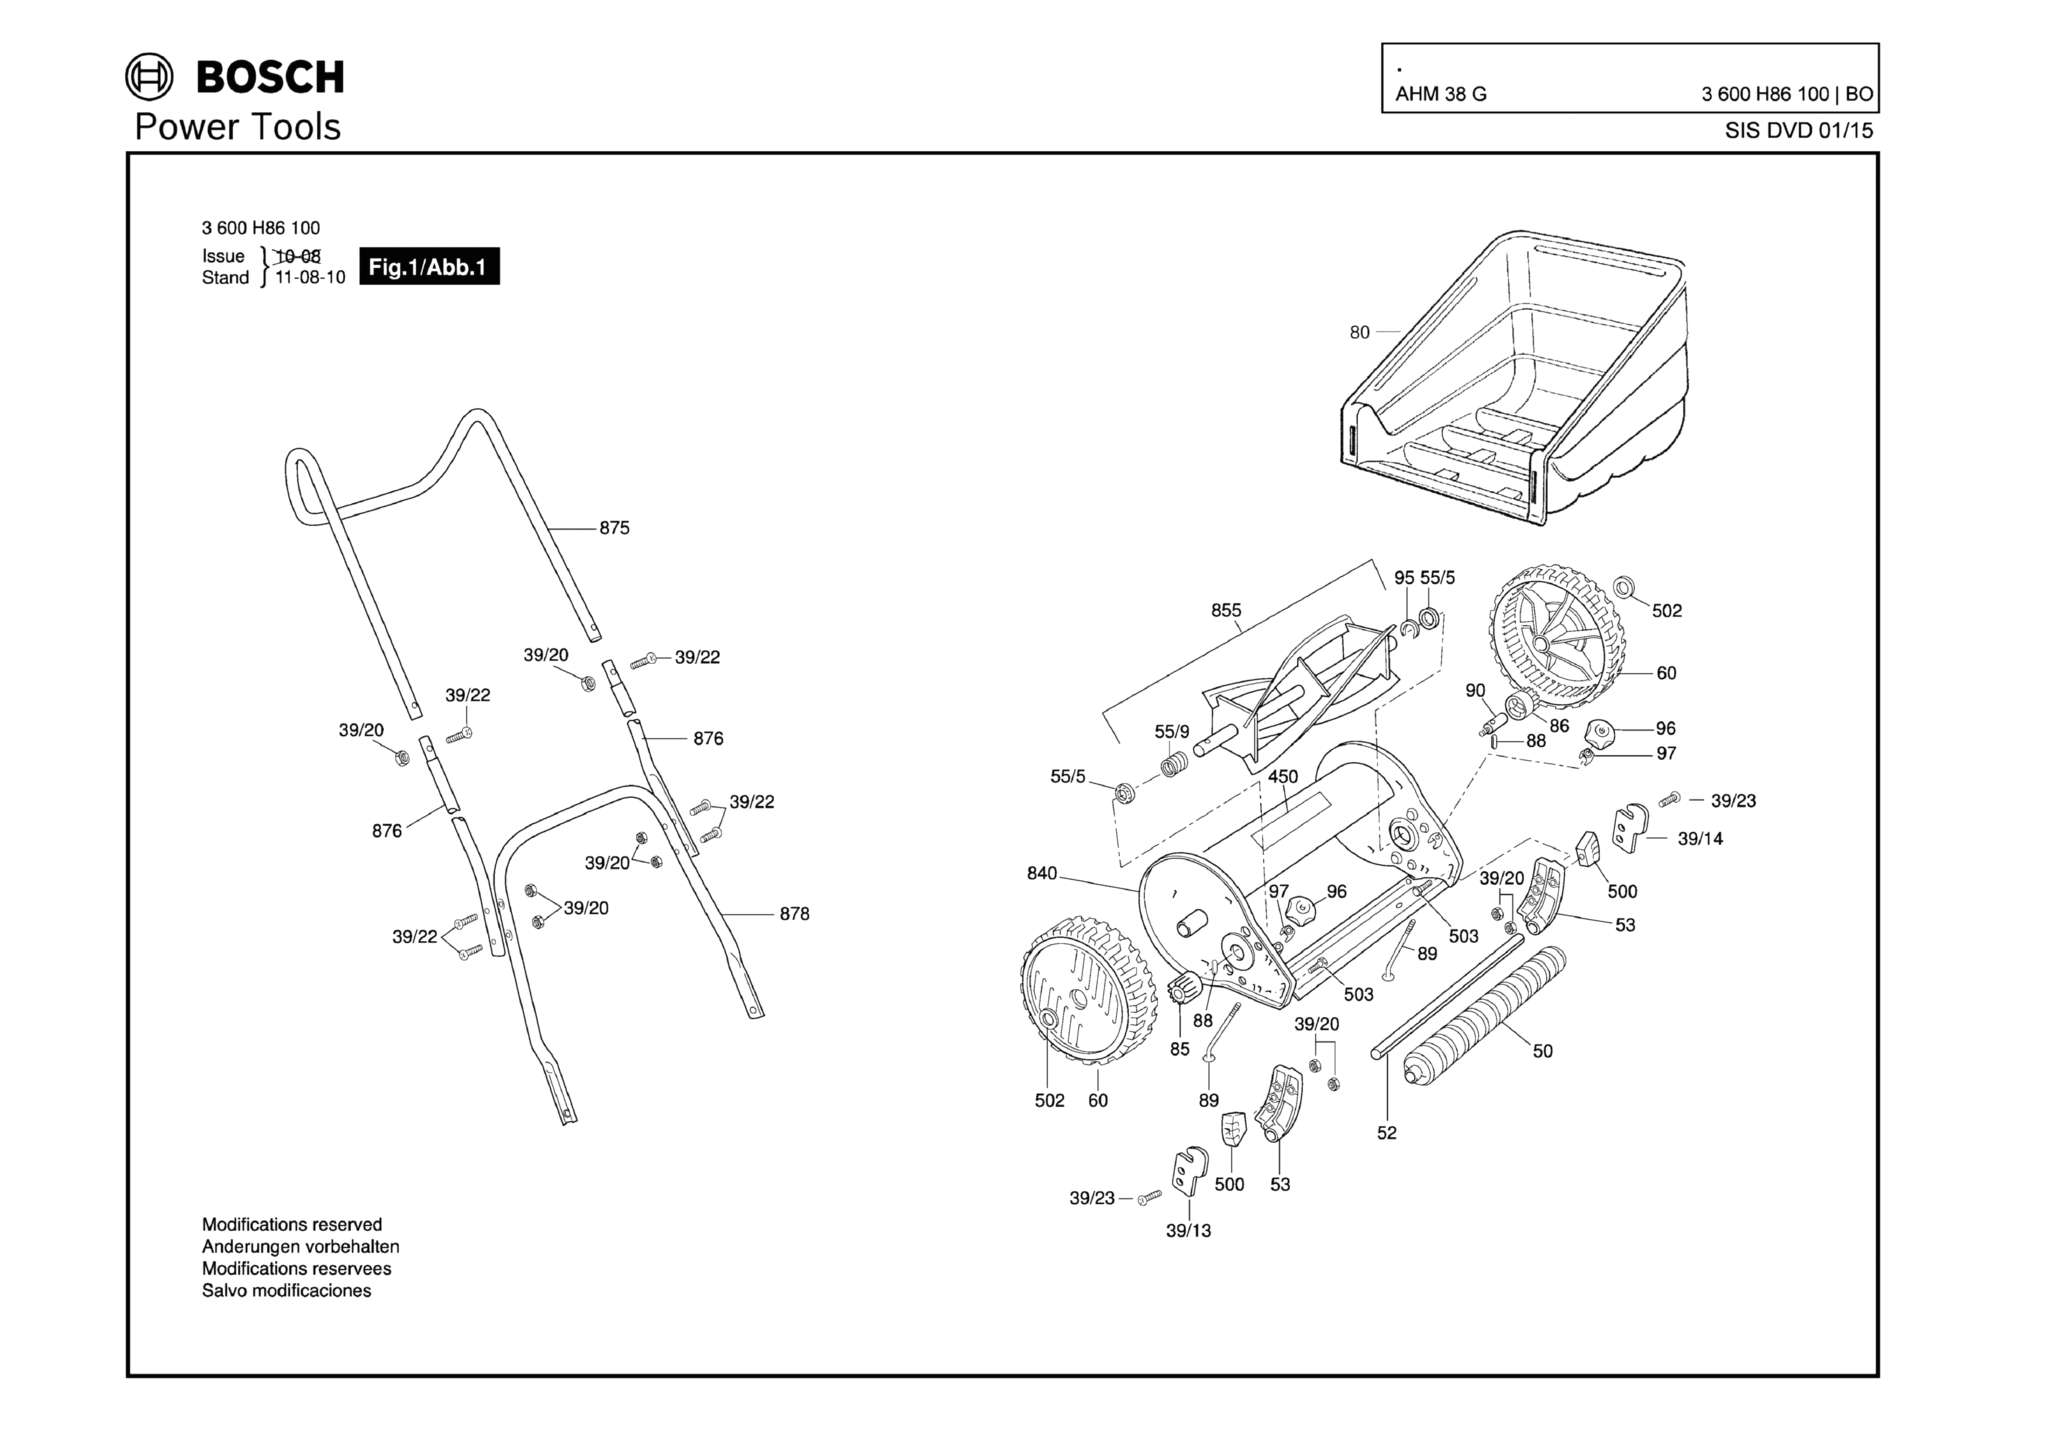 Запчасти, схема и деталировка Bosch AHM 38 G (ТИП 3600H86100)